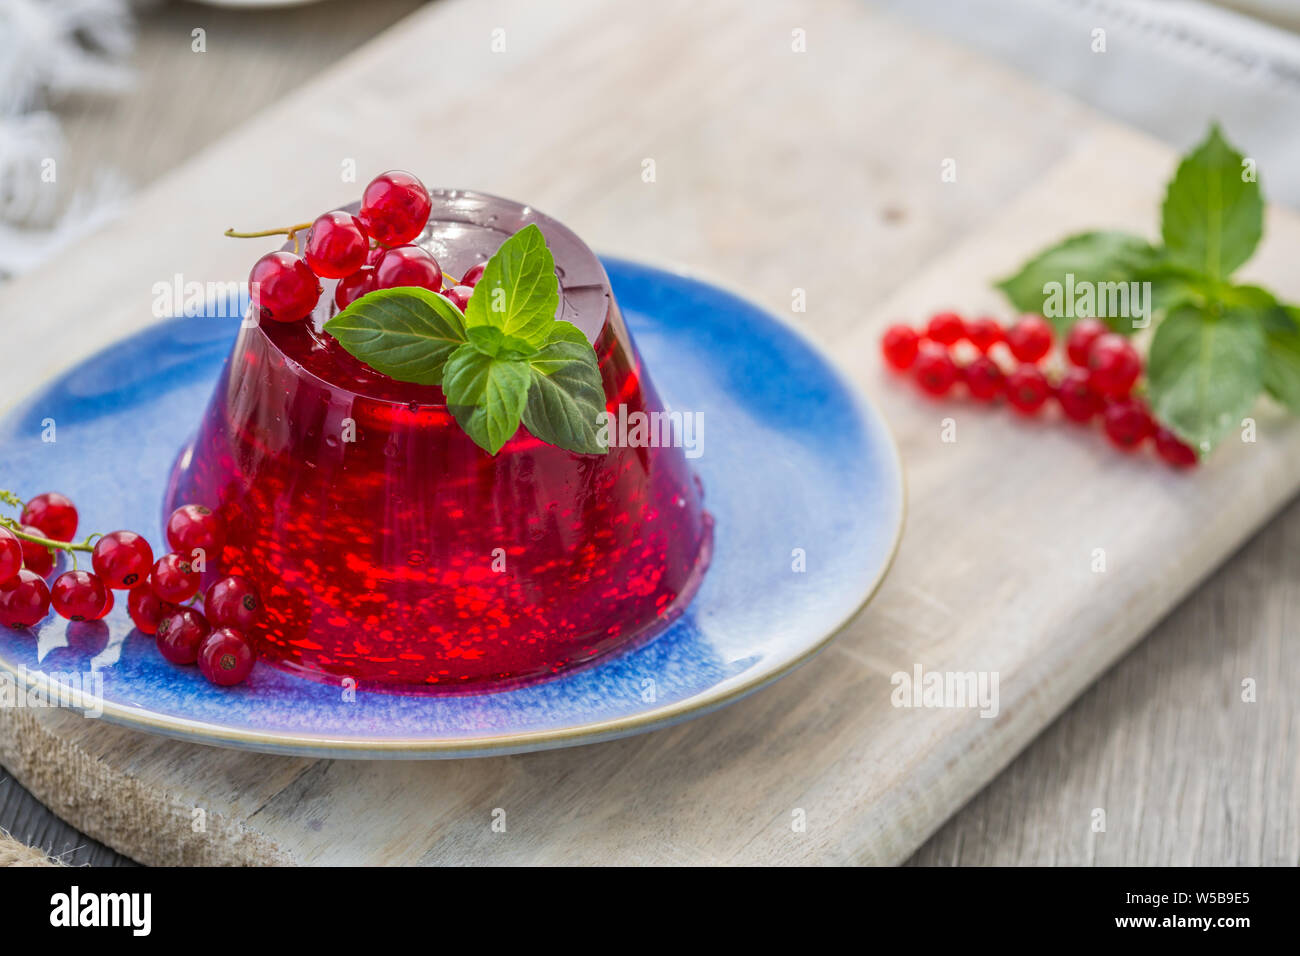 Photo d'été dessert avec de la gelée de groseille rouge. Garni d'un brin de basilic frais sur fond clair. Banque D'Images